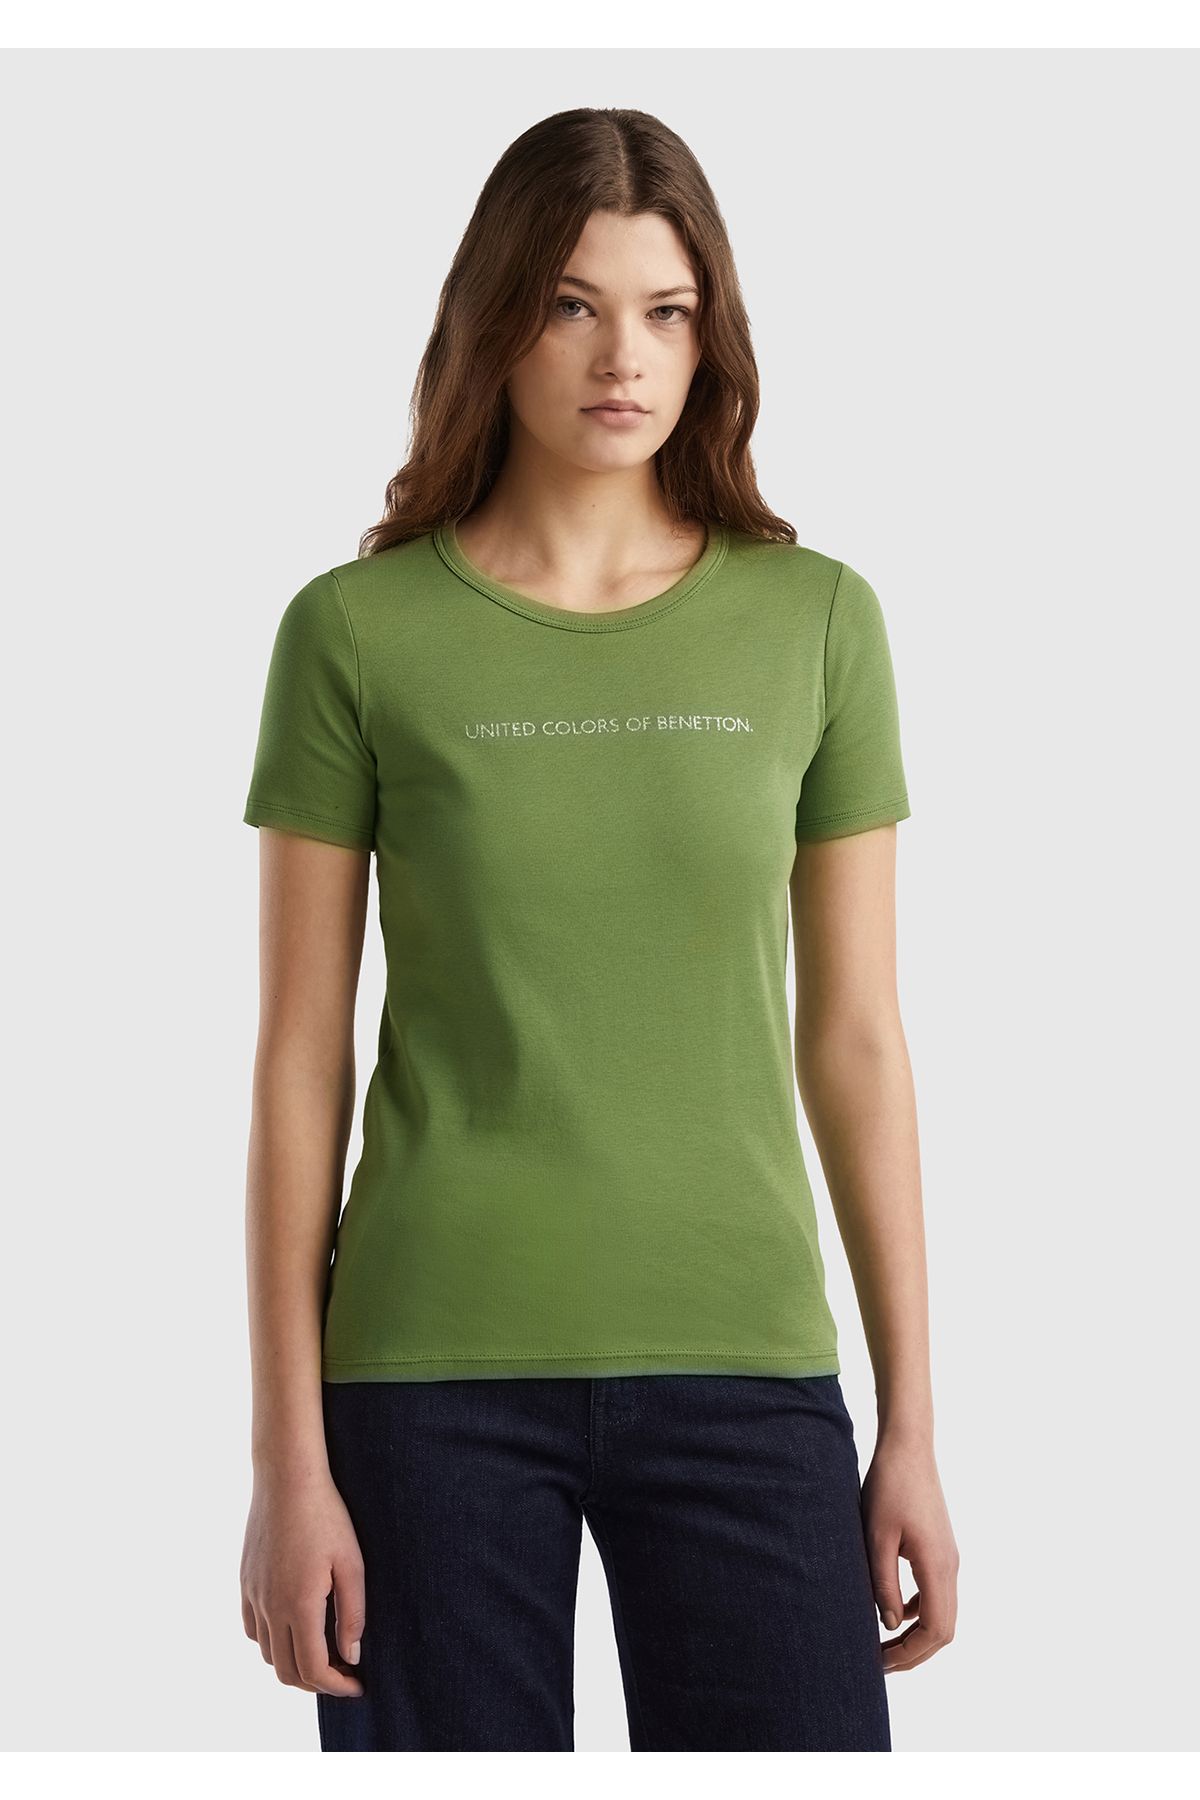 United Colors of Benetton Kadın Soluk Yeşil %100 Koton Benetton Yazılı Basic Tshirt